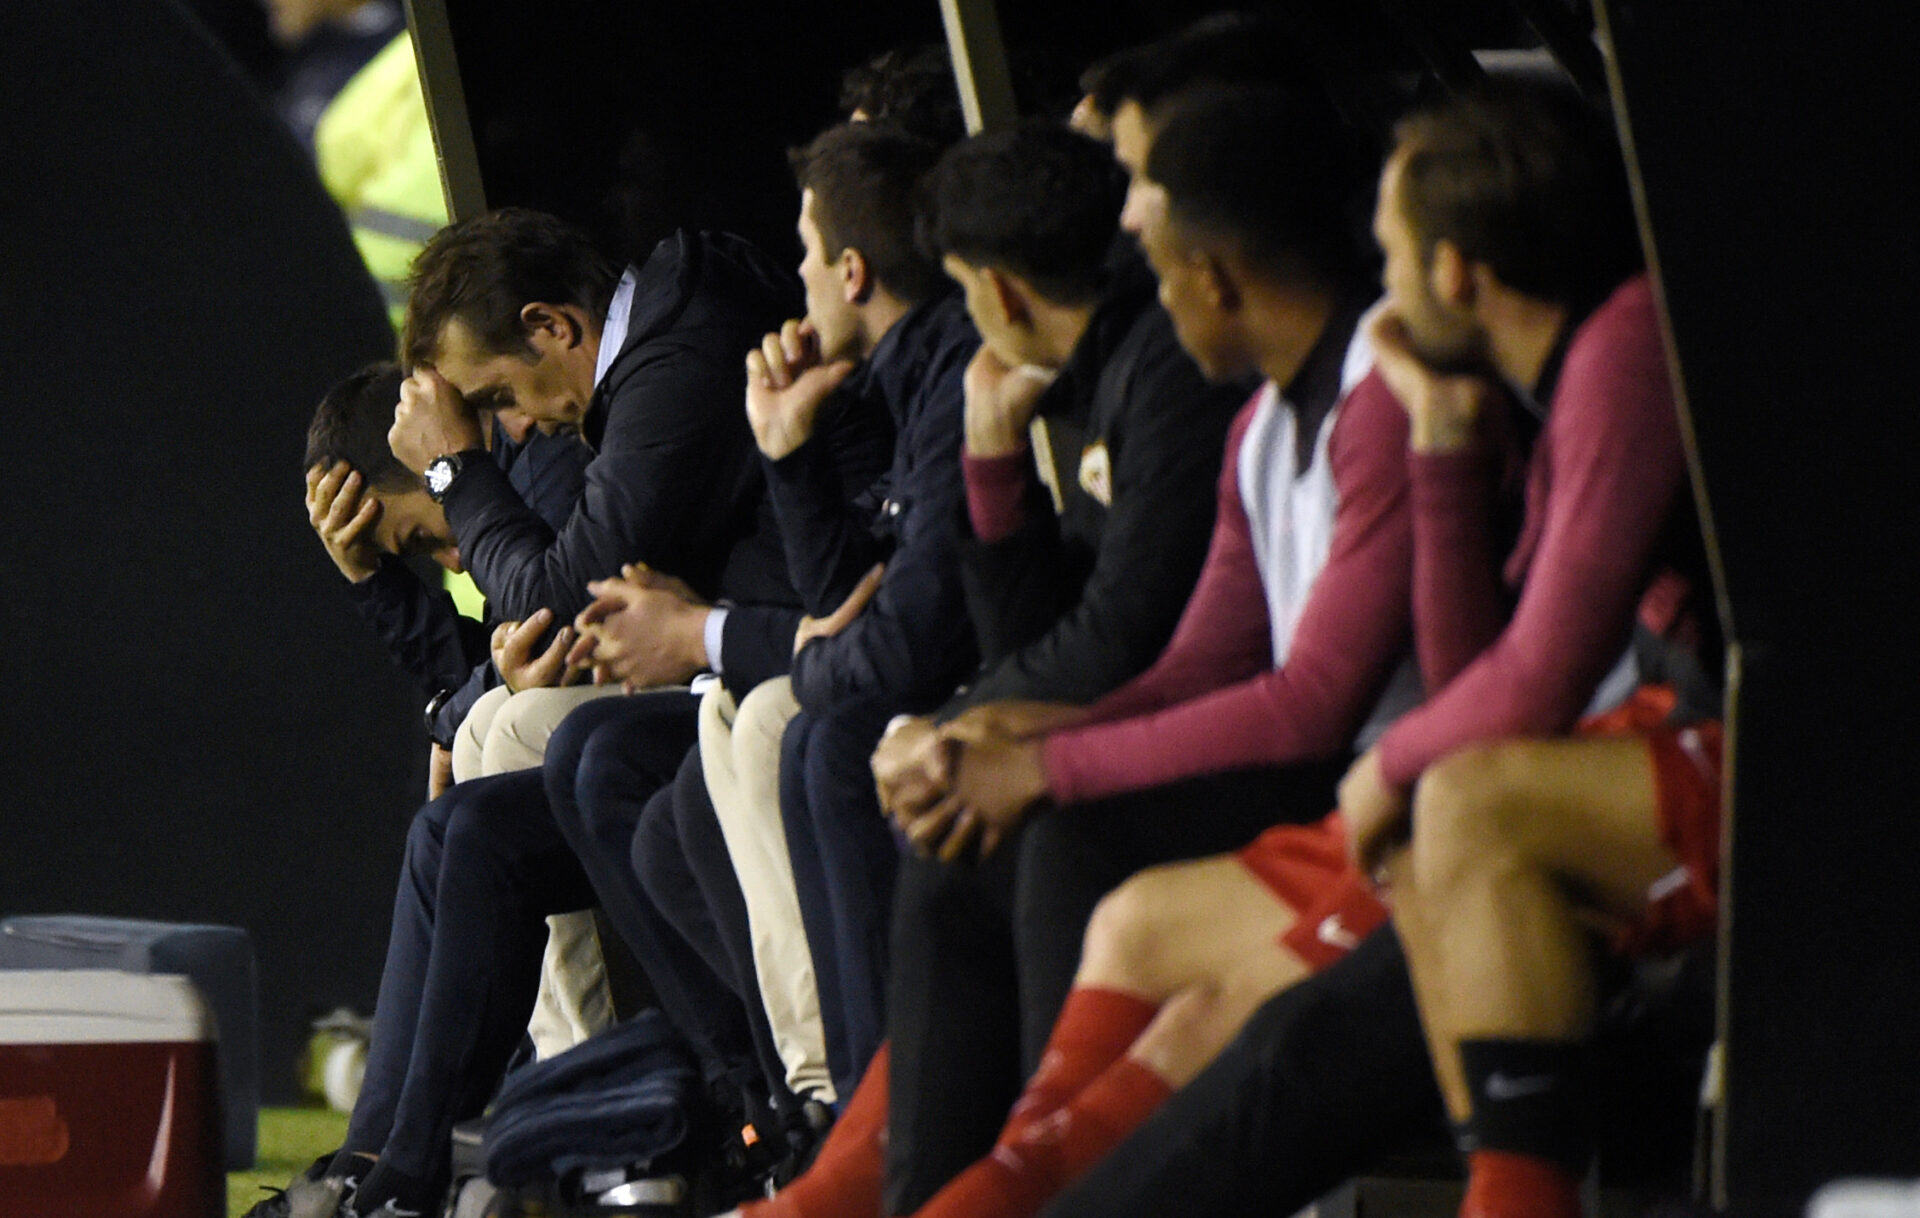 El técnico del Sevilla FC, Julen Lopetegui, tras el tanto de la remontada del Celta de Vigo | Imagen: MIGUEL RIOPA / AFP via Getty Images